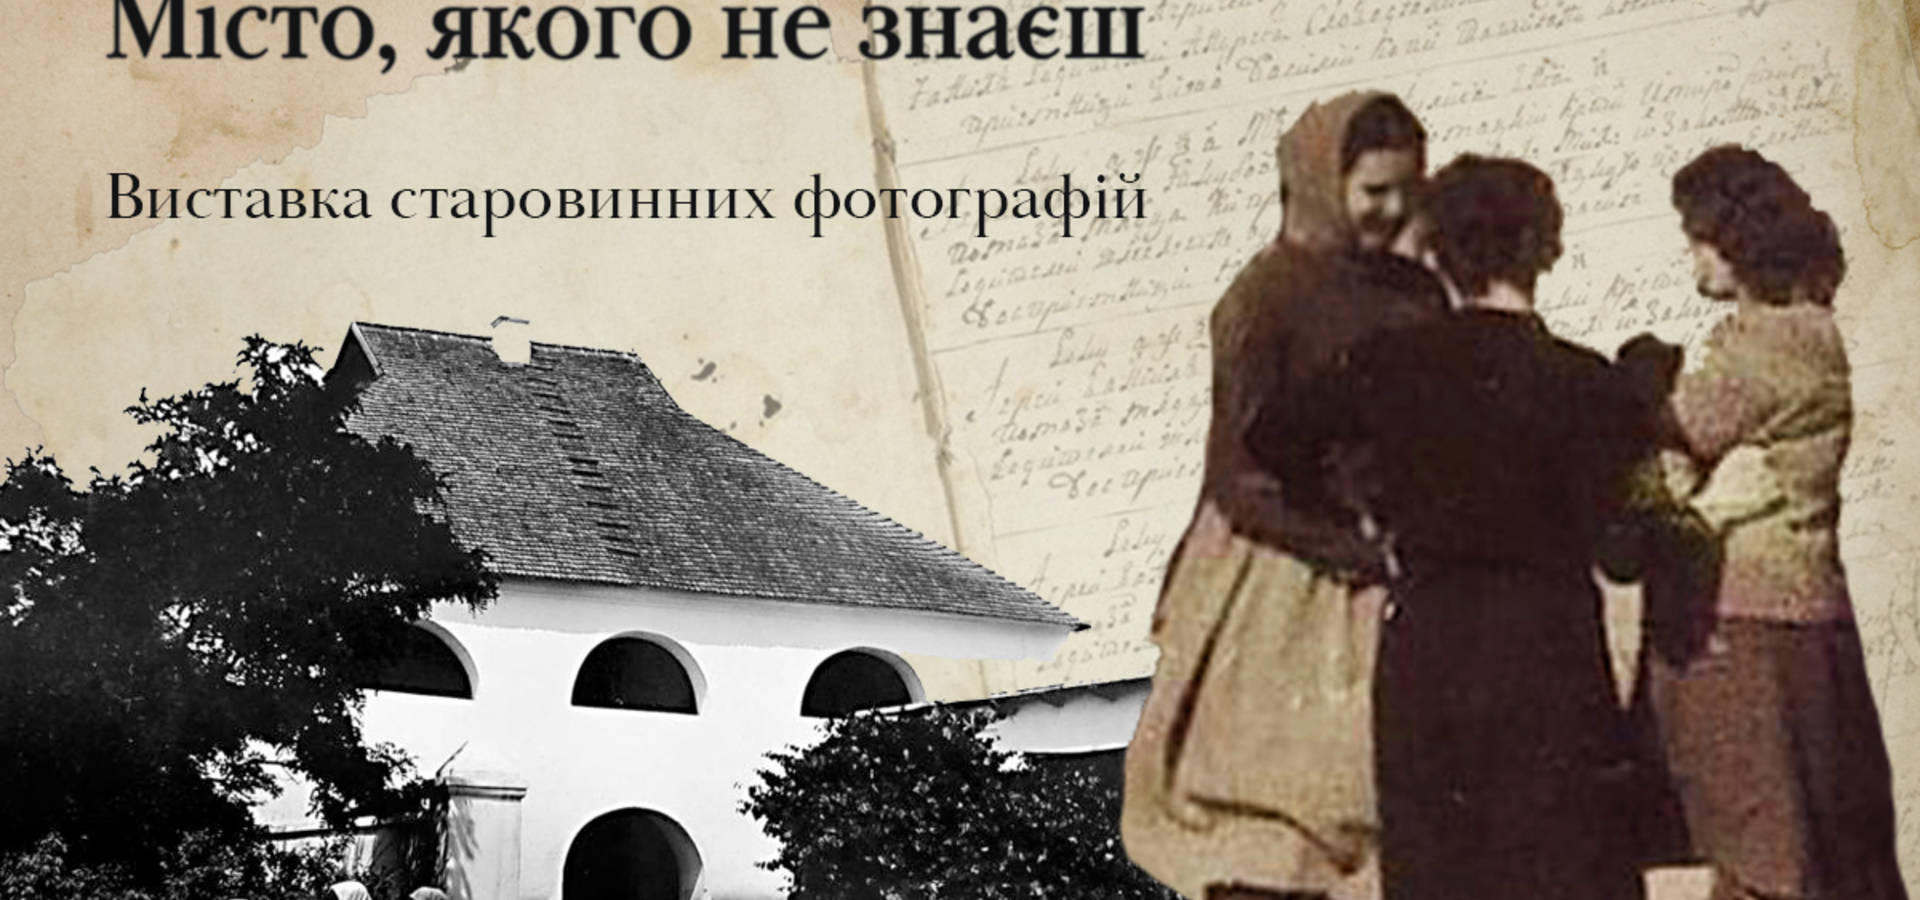 В Мурашнику відбудеться виставка старовинних фотографій "Хмільник. Місто, якого не знаєш"